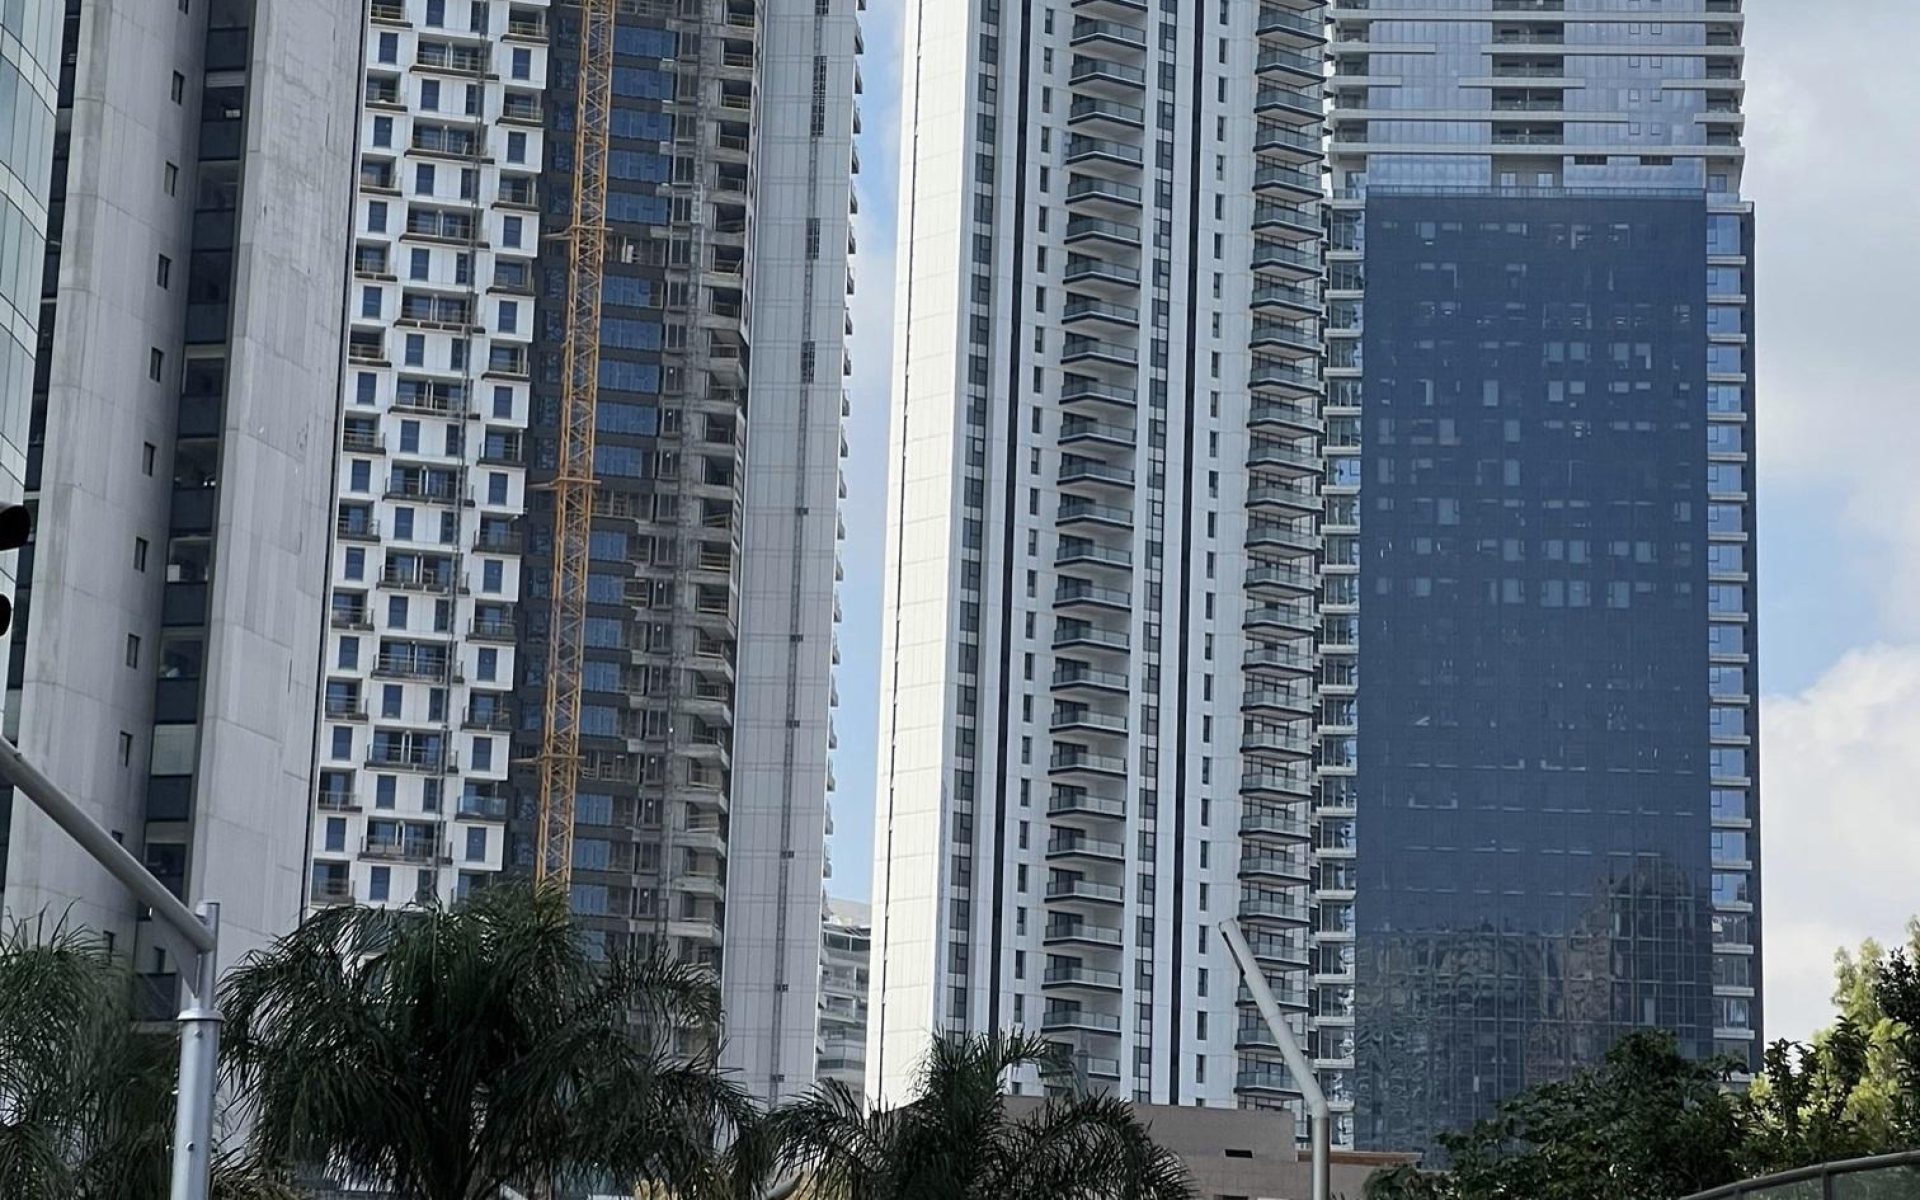 מגדלי דירות להשכרה בתל אביב. 20% מהדירות בשכר דירה מפוקח